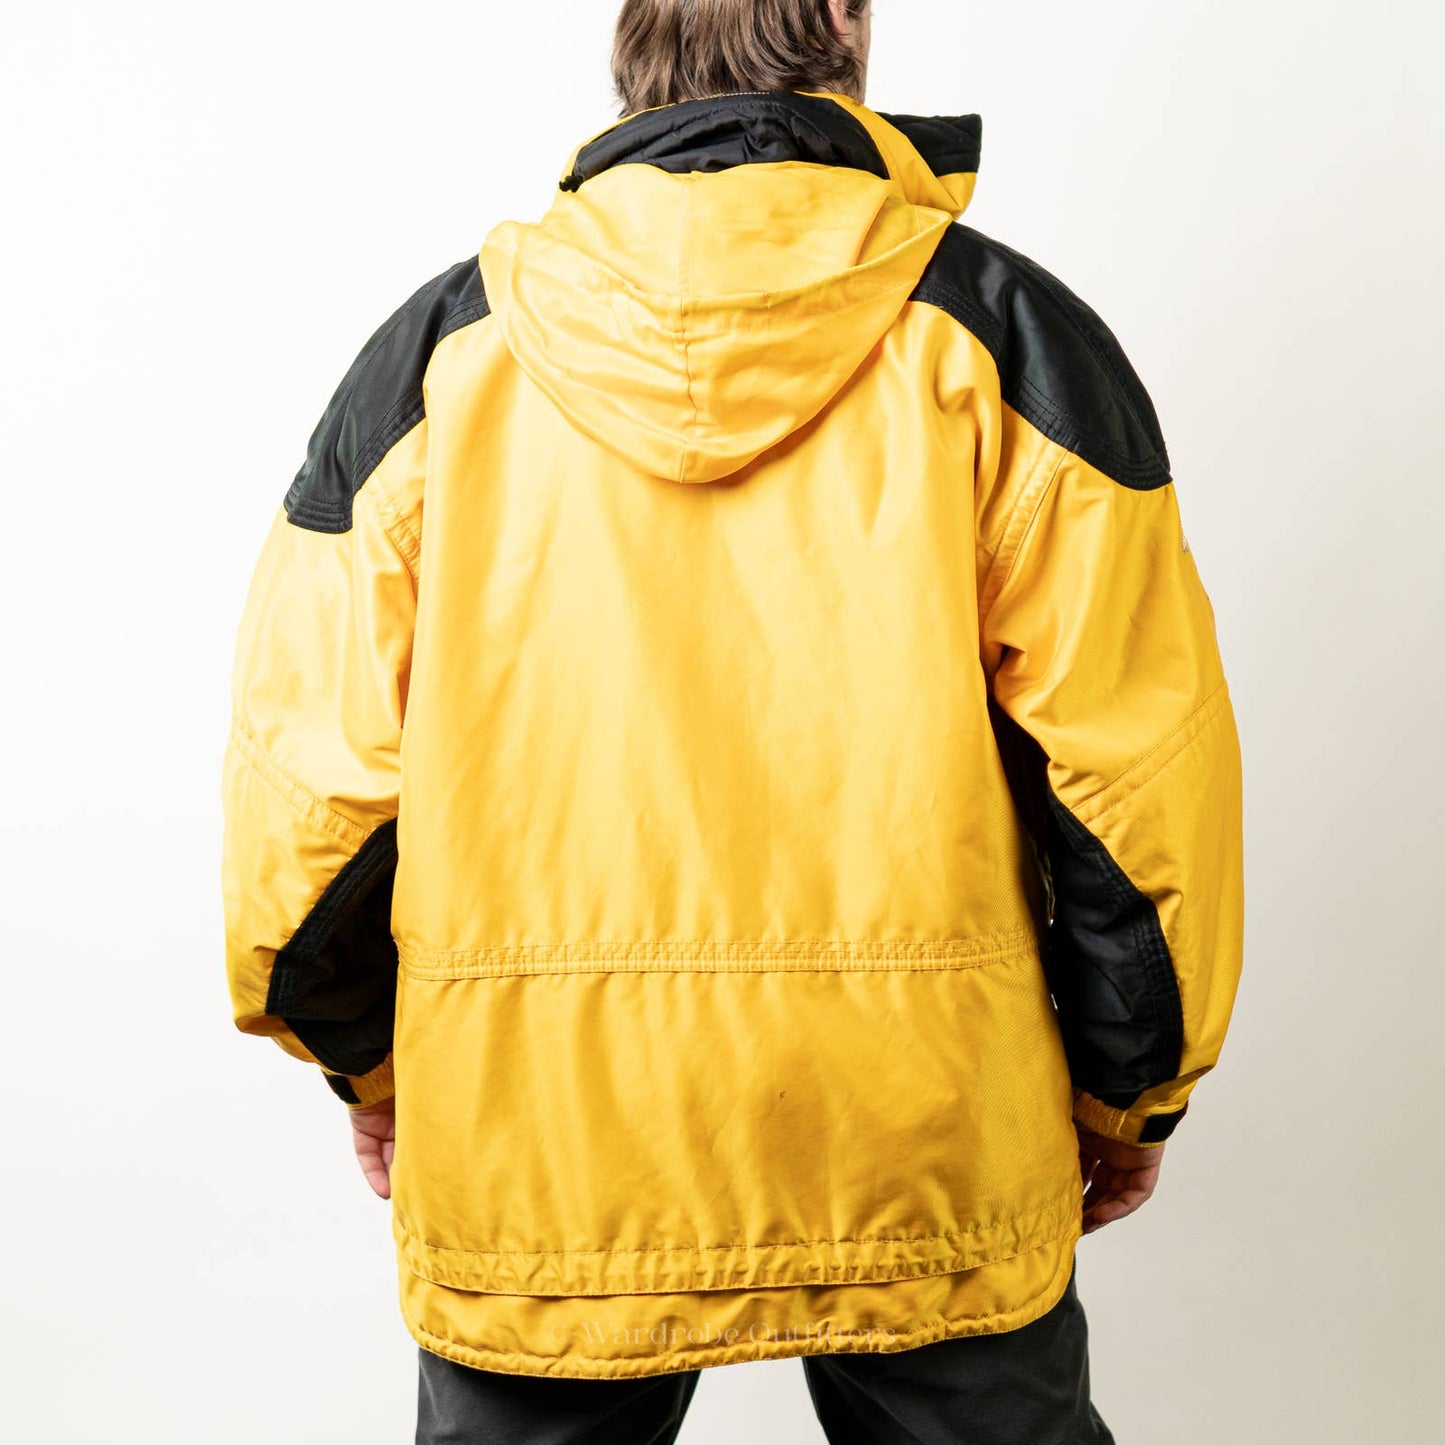 Vintage 90s Puffer Ski Jacket Coat Parka by Descente - XL